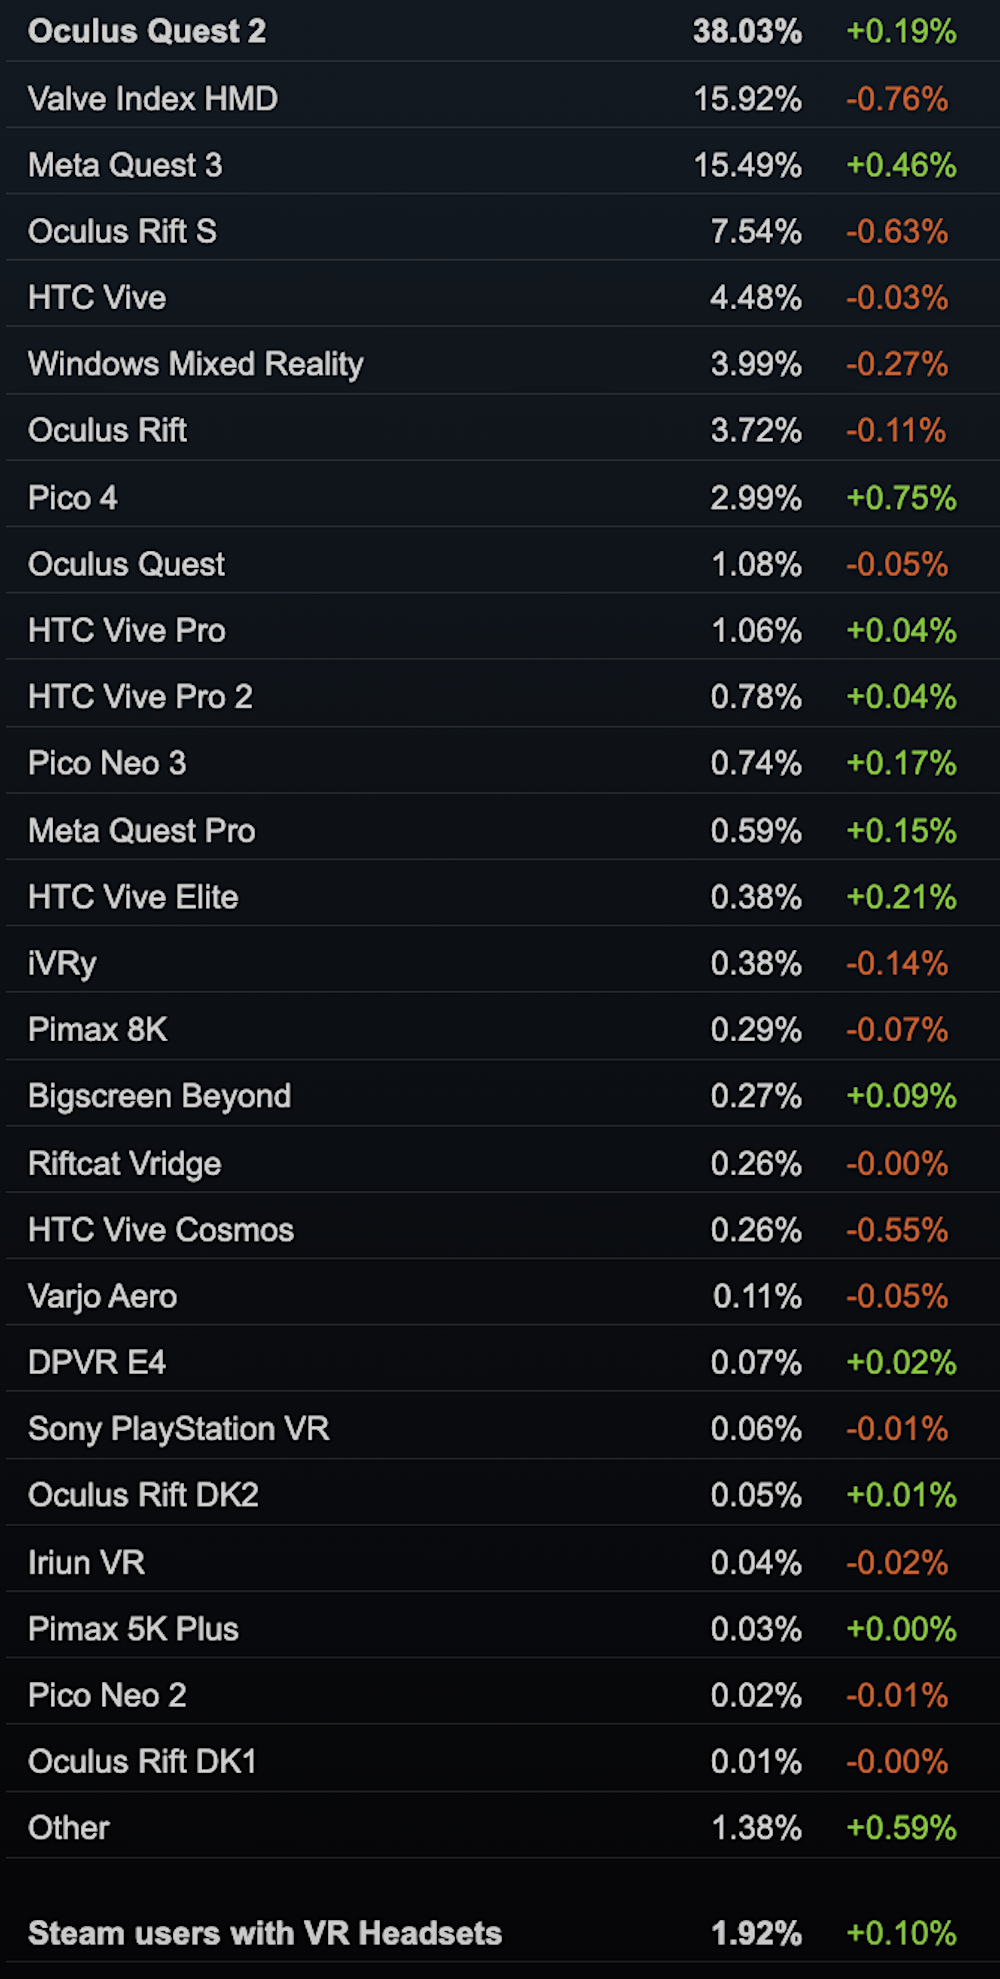 SteamVR-Statistik der meistgenutzten PC-VR-Headsets.